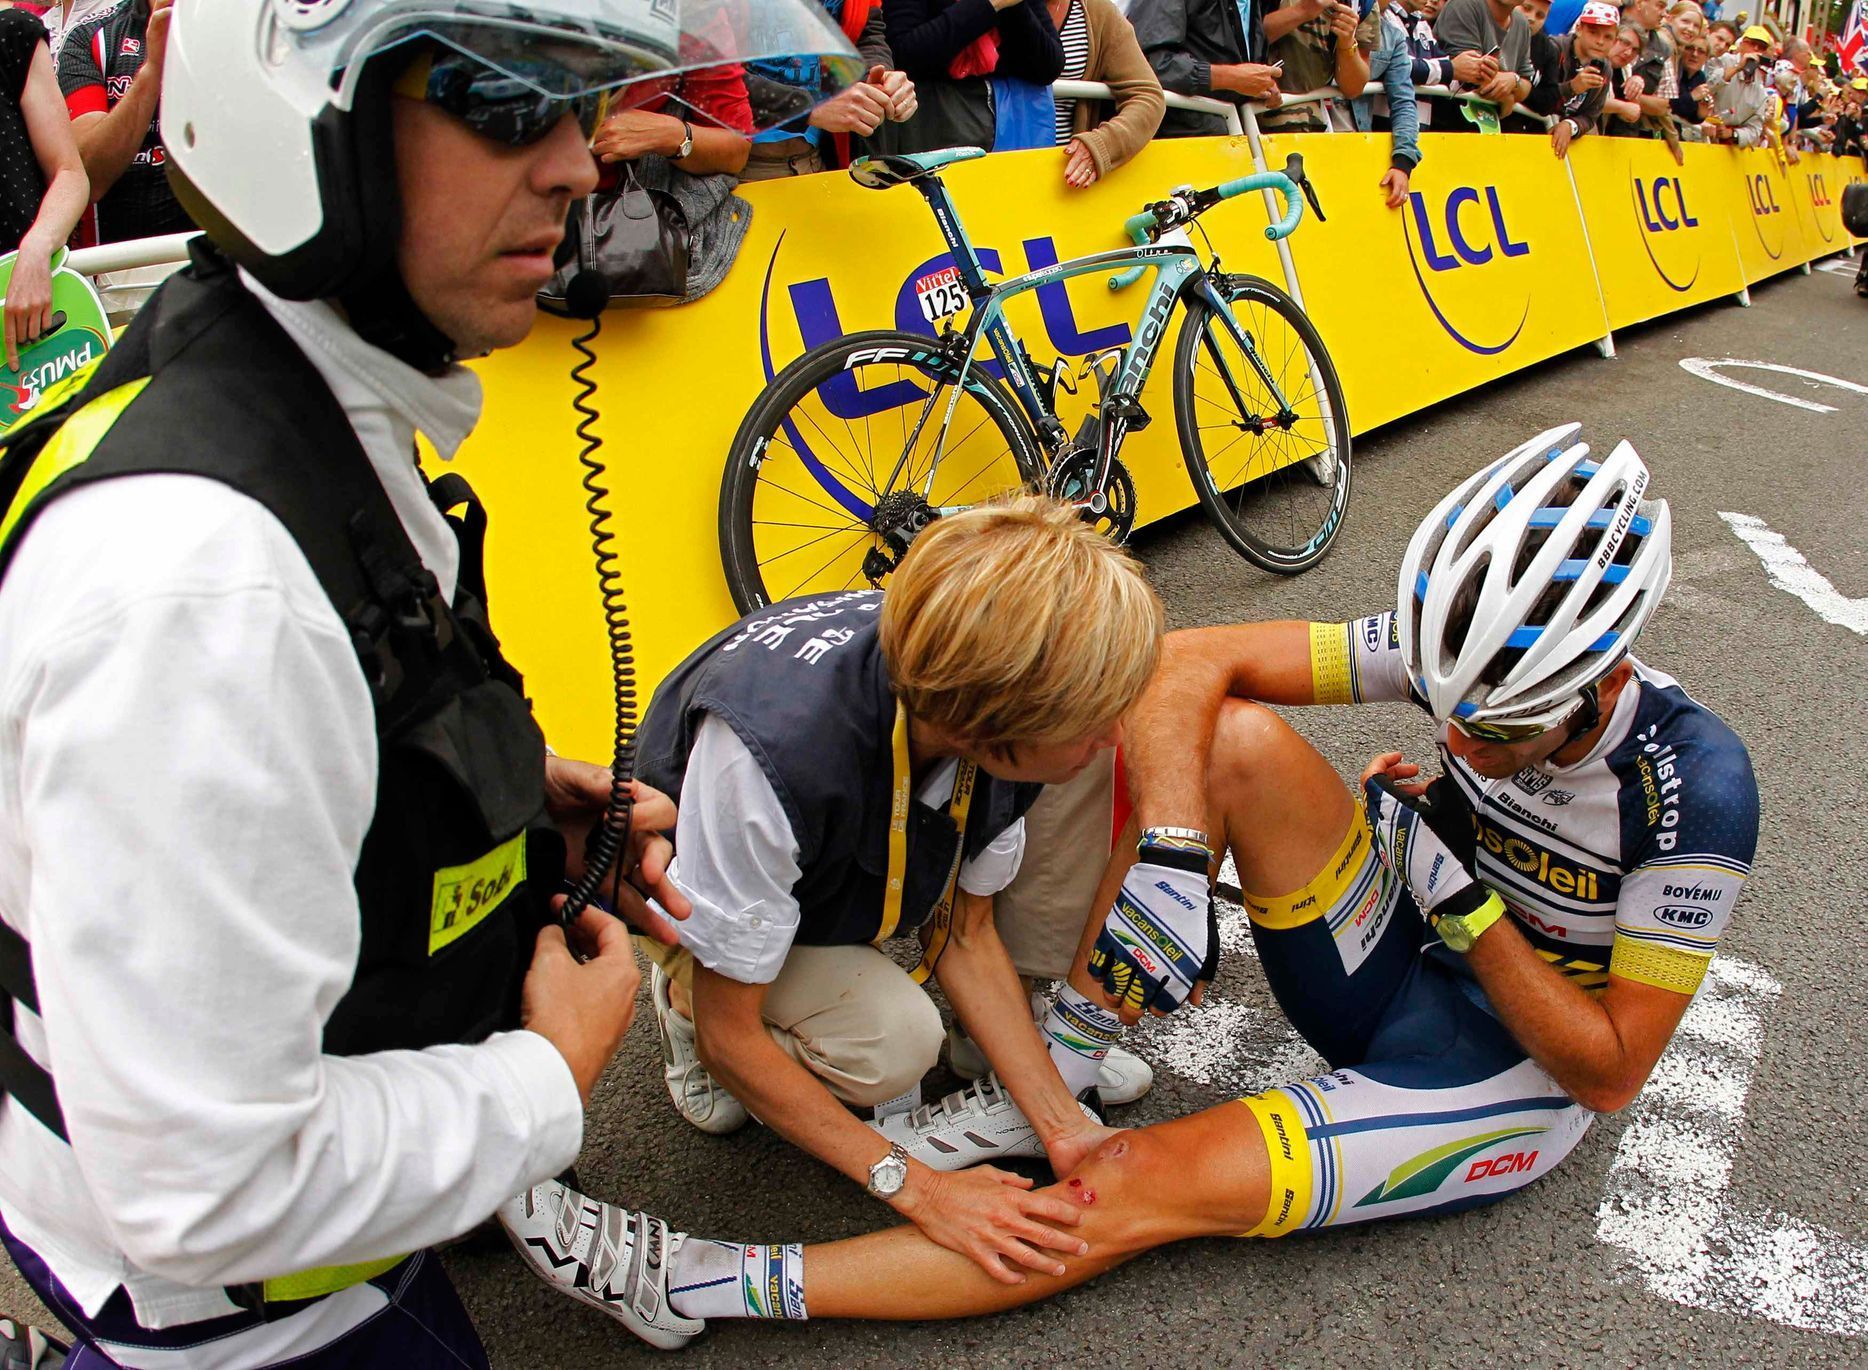 Pády a vítězové Tour de France 2012